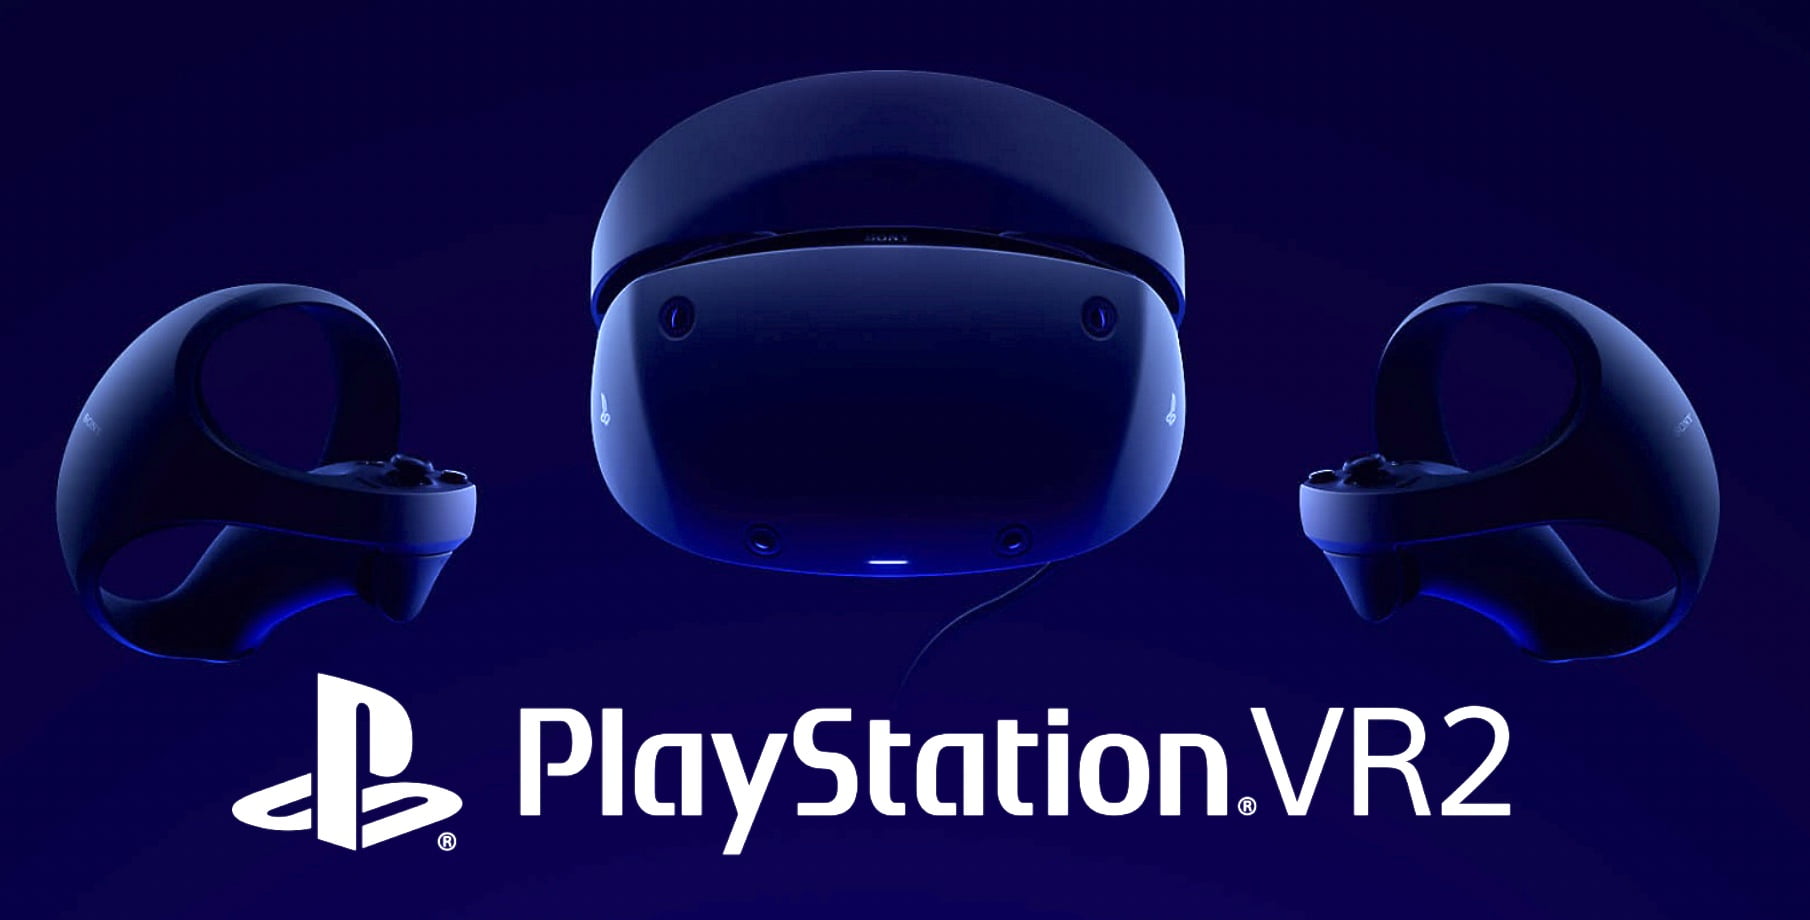 Le casque PlayStation VR2 sortira le 22 février et coûtera 600